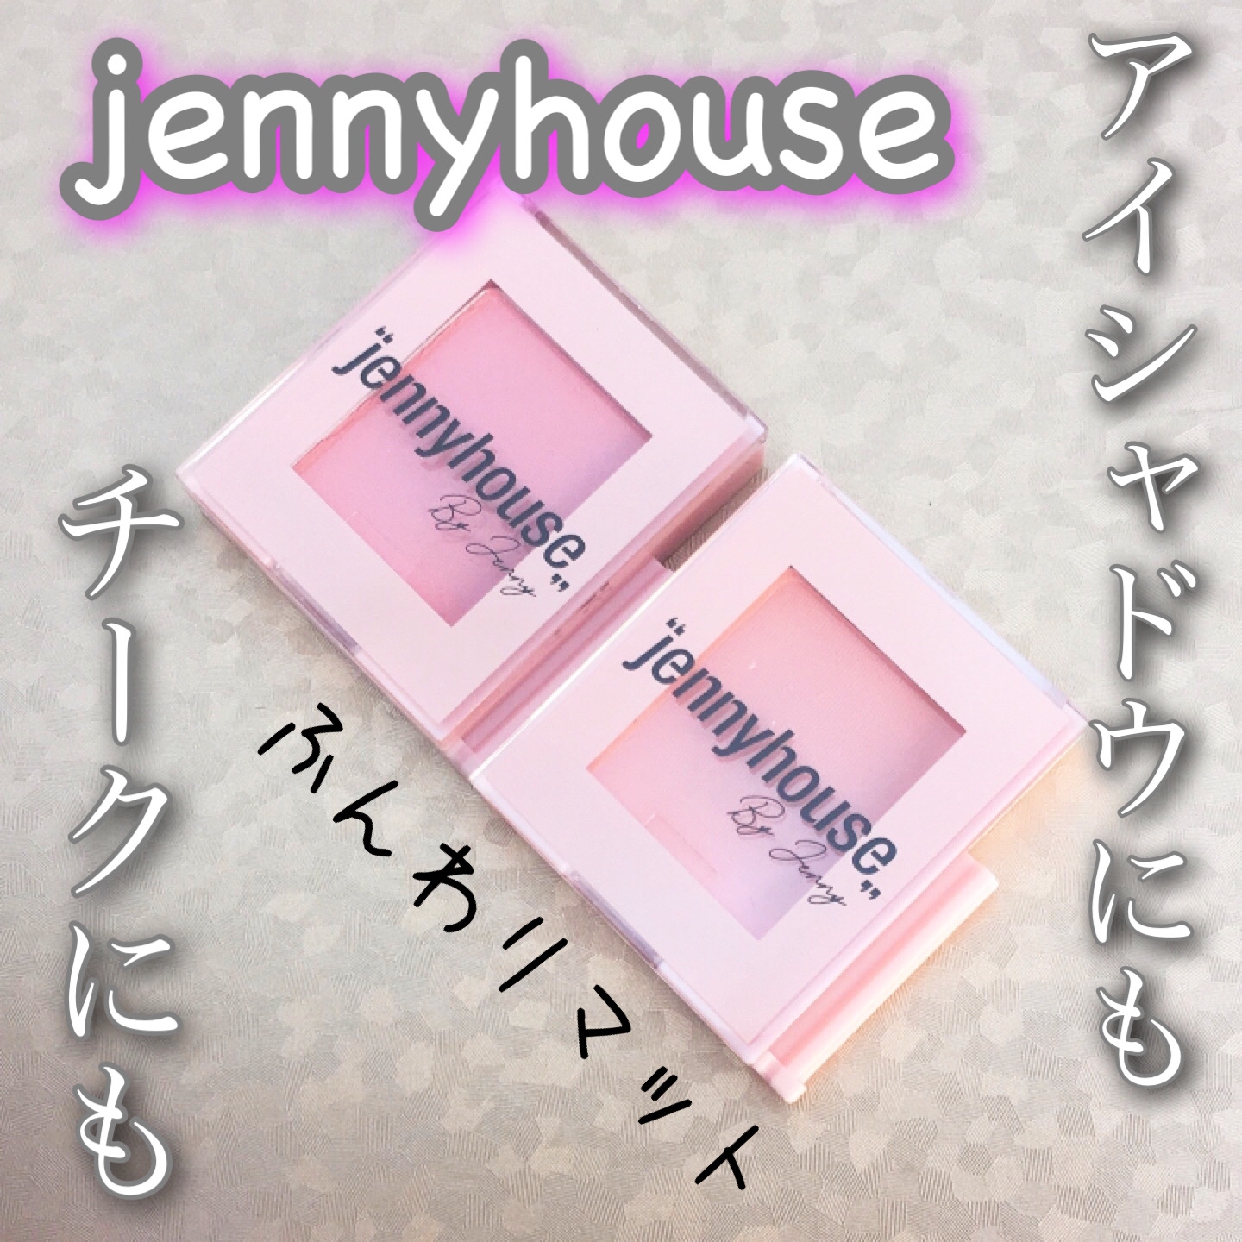 jennyhouse(ジェニーハウス) エアーフィットアーティストシャドウを使ったyunaさんのクチコミ画像1